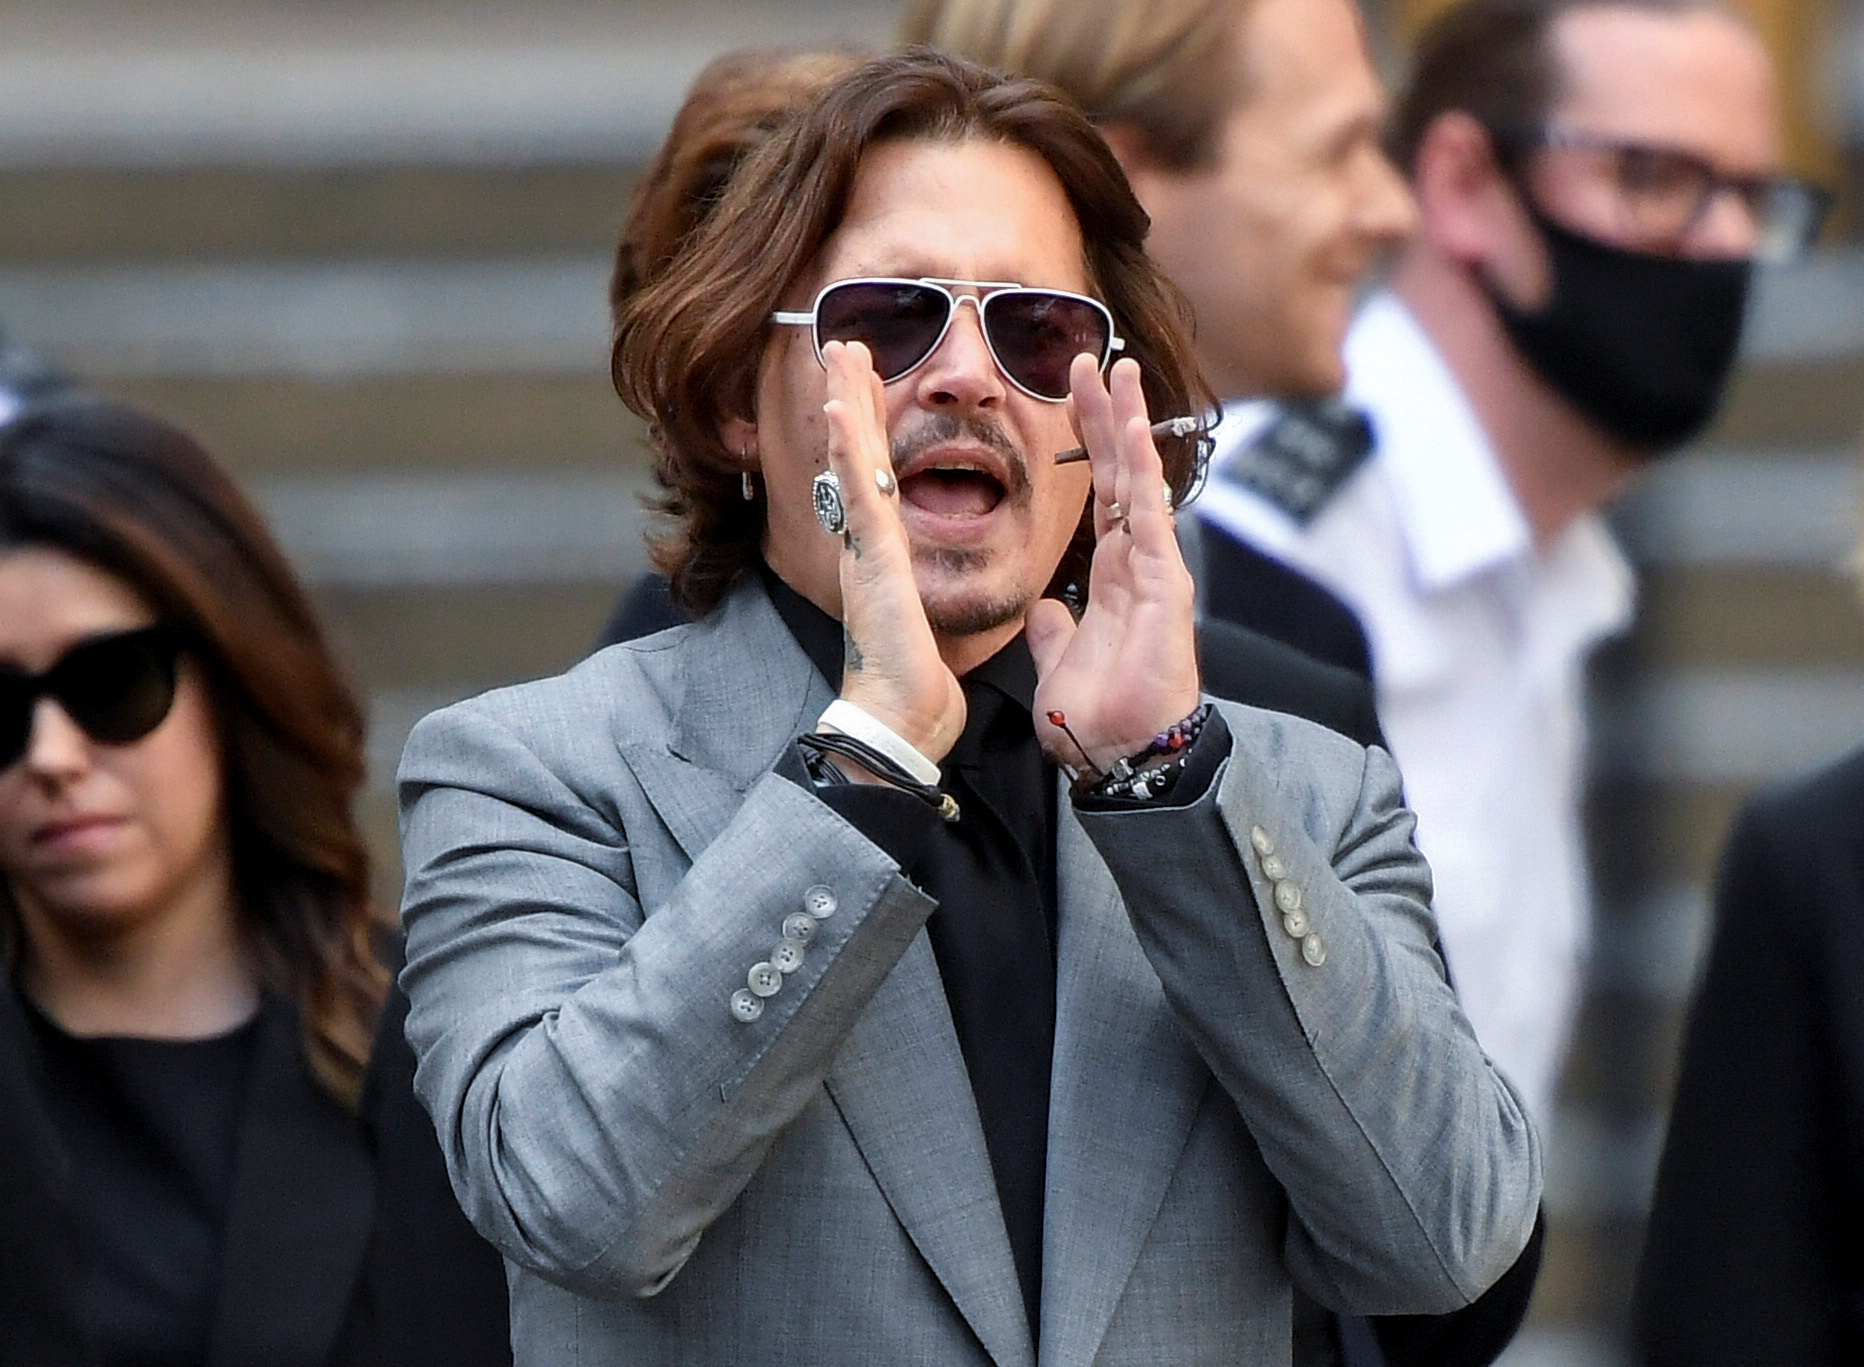 El actor Johnny Depp ha presentado una nueva demanda contra su exesposa. (Crédito/REUTERS/Toby Melville)